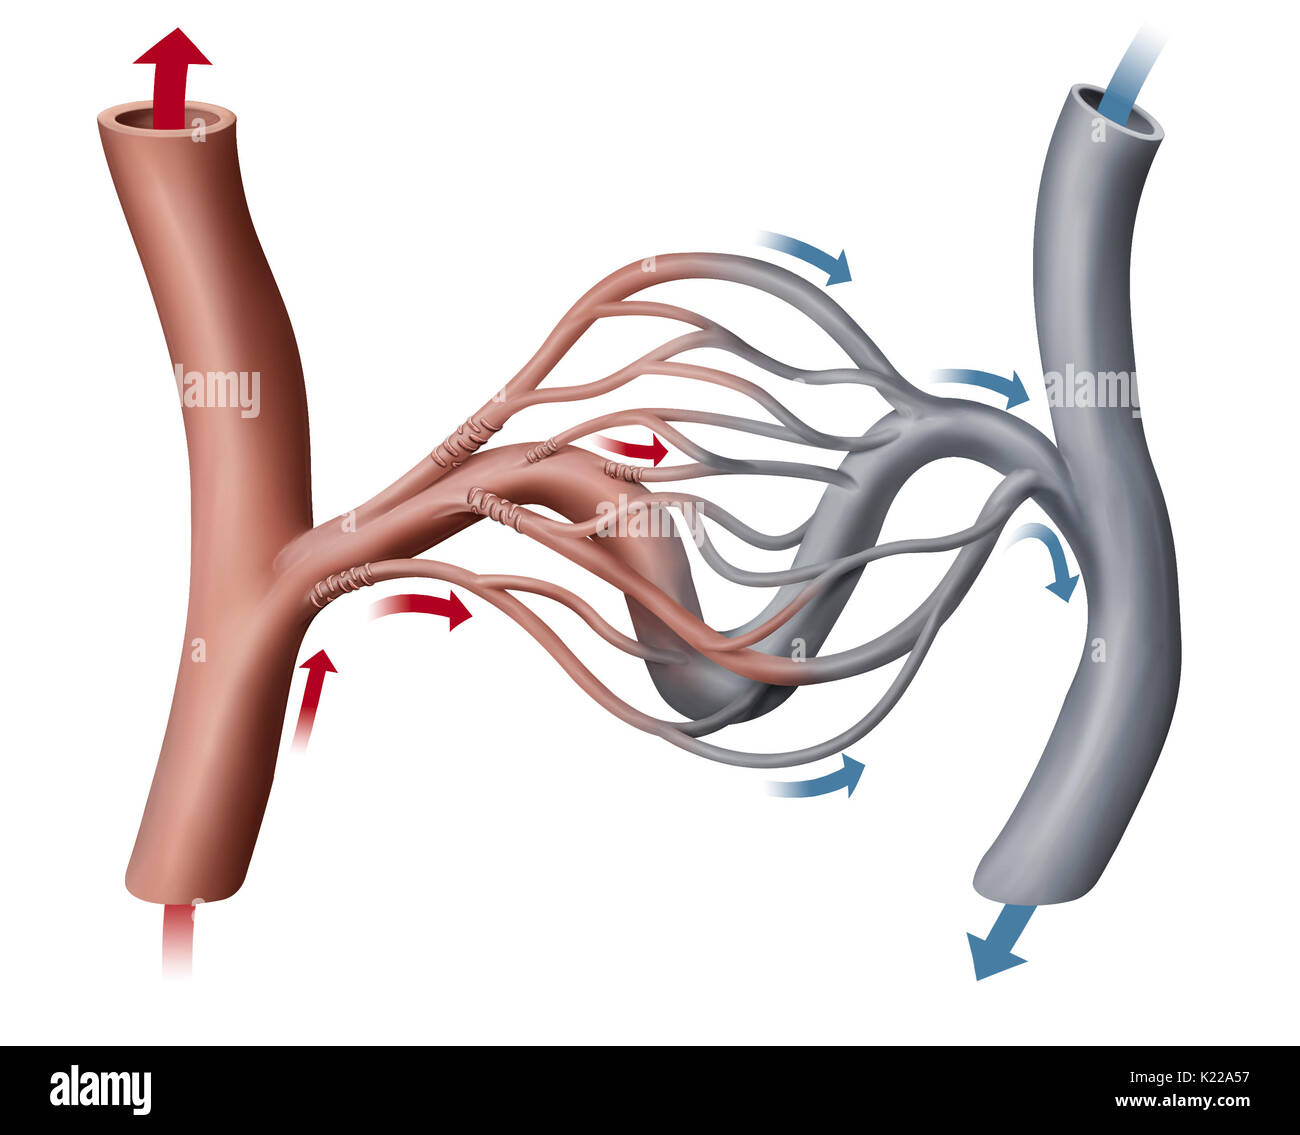 Piccolo vaso sanguigno garantendo la circolazione del sangue tra un'arteriola e una venula; la sua parete consente lo scambio tra il sangue e la superficie esterna del capillare. Foto Stock